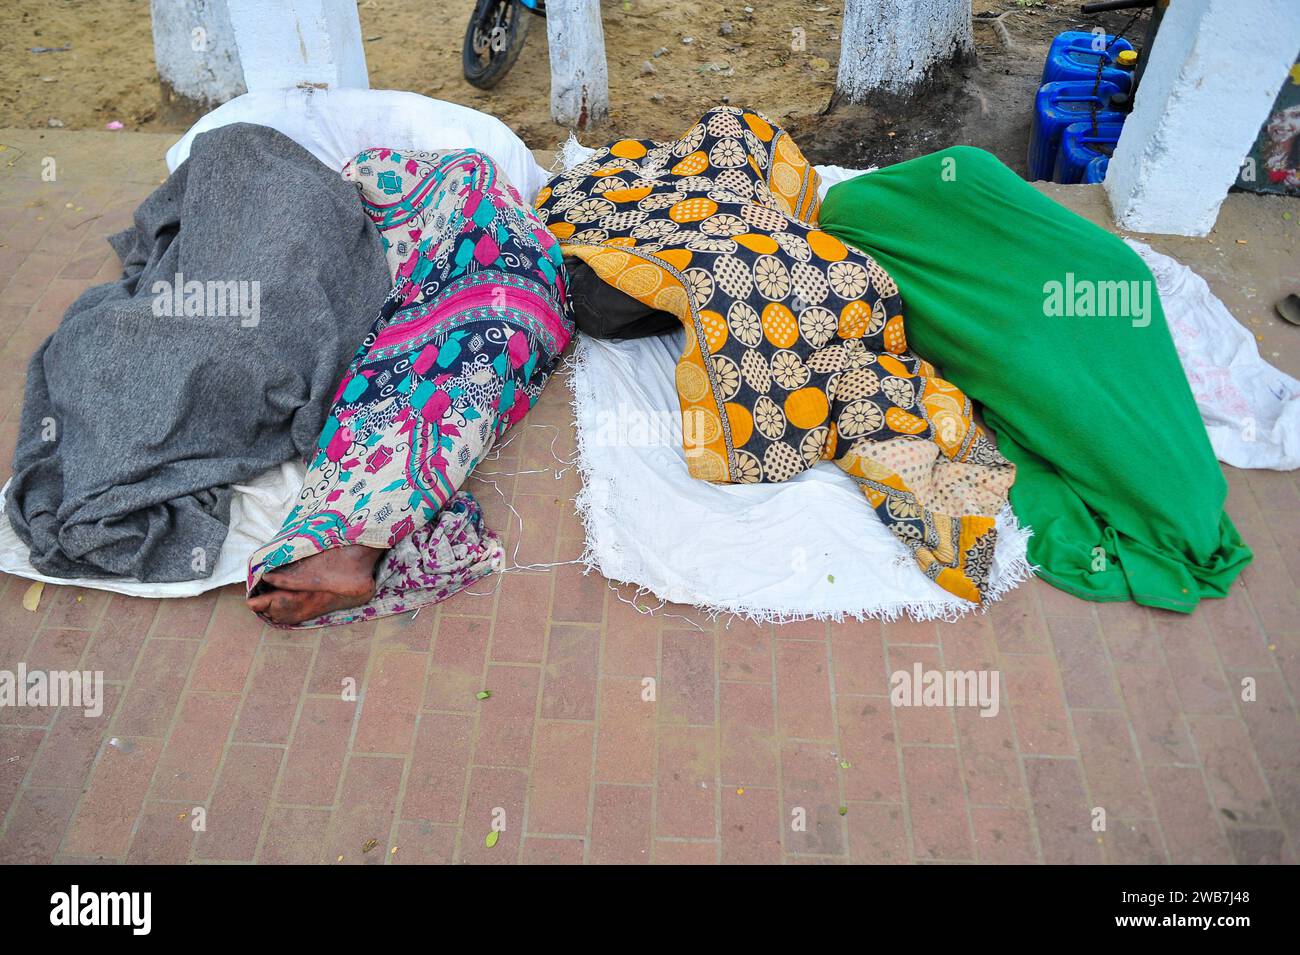 Obdachlose Menschen bedecken ihre Körper von Kopf bis Fuß mit allem, was sie schaffen können, schlafen draußen in der zitternden Kälte nahe der Regierung Alia Madrasa in Sylhet-Stadt Chowhatta. Laut der Bevölkerungszählung von 2011 durch das Bangladesch Bureau of Statistics (BBS) betrug die Sylhet-Bevölkerung 479.837. Die heutige Bevölkerungswachstumsrate in Sylhet beträgt 2,5 % pro Jahr. Angesichts der Tatsache, dass täglich 10 % der schwimmenden Bevölkerung in die Stadt kommen, wird die heutige (2020) Bevölkerung auf etwa 659 176 geschätzt. Sylhet, Bangladesch. Stockfoto